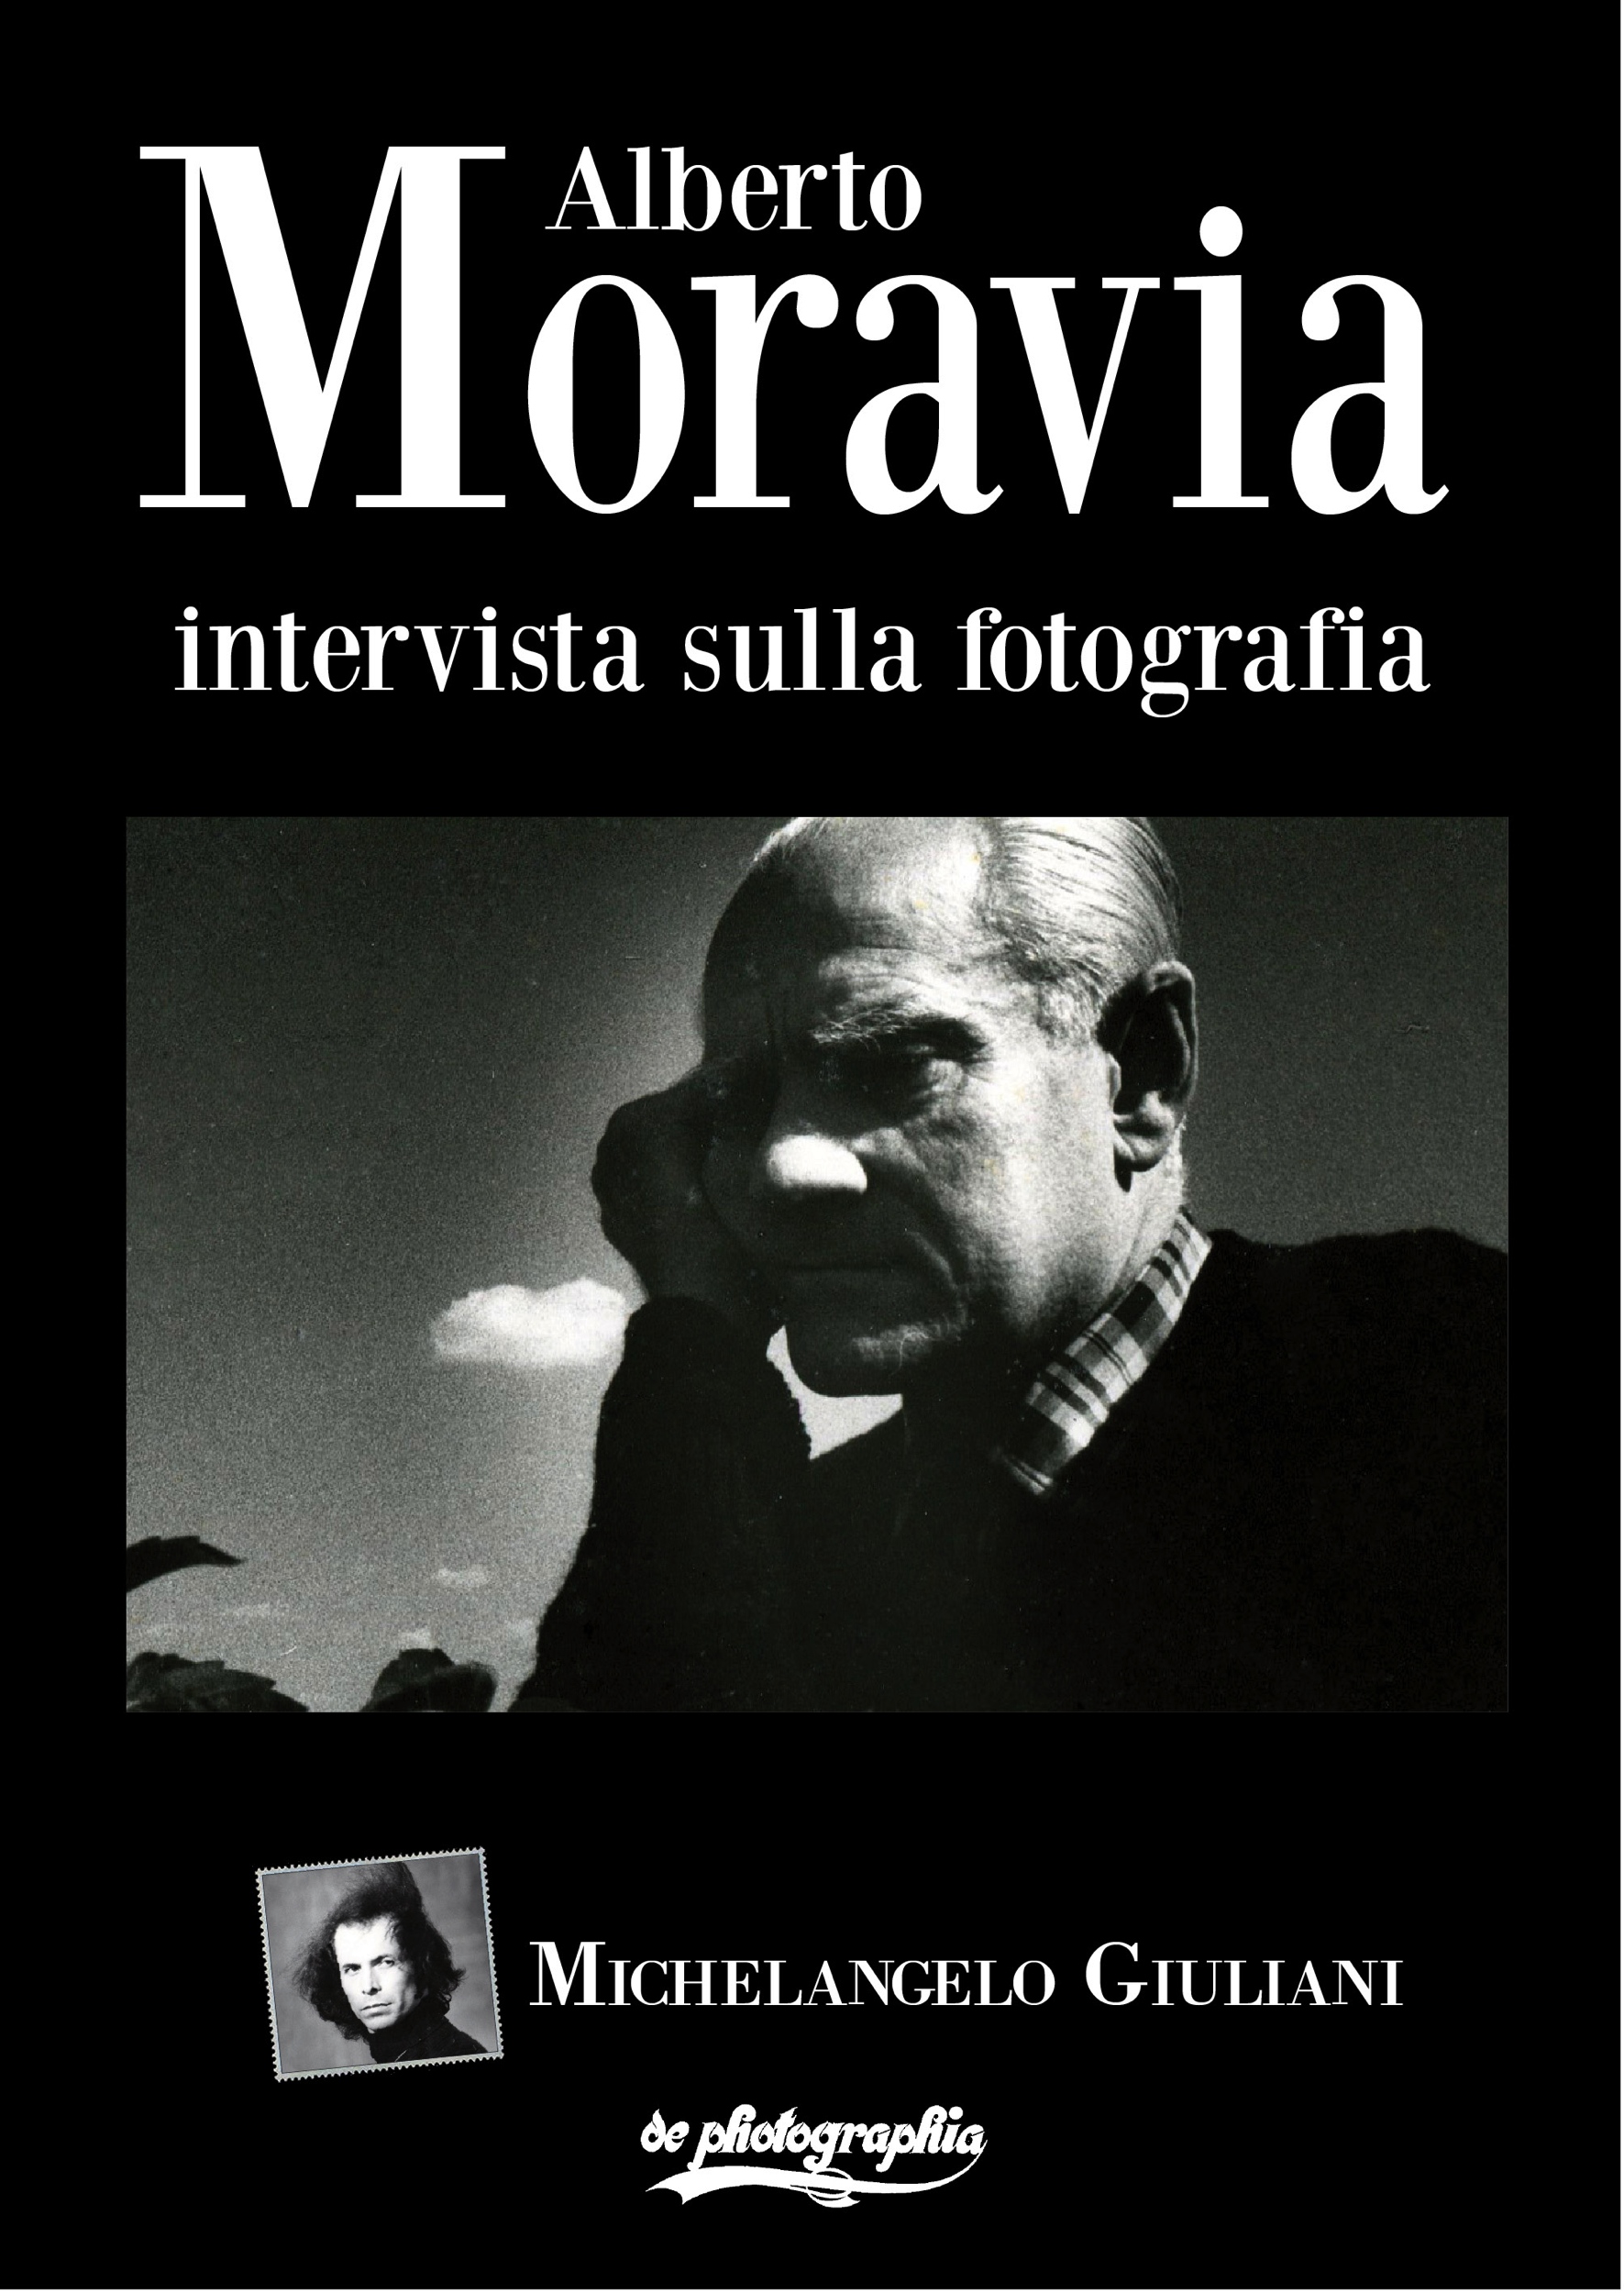 Alberto-Moravia-Kindle copia